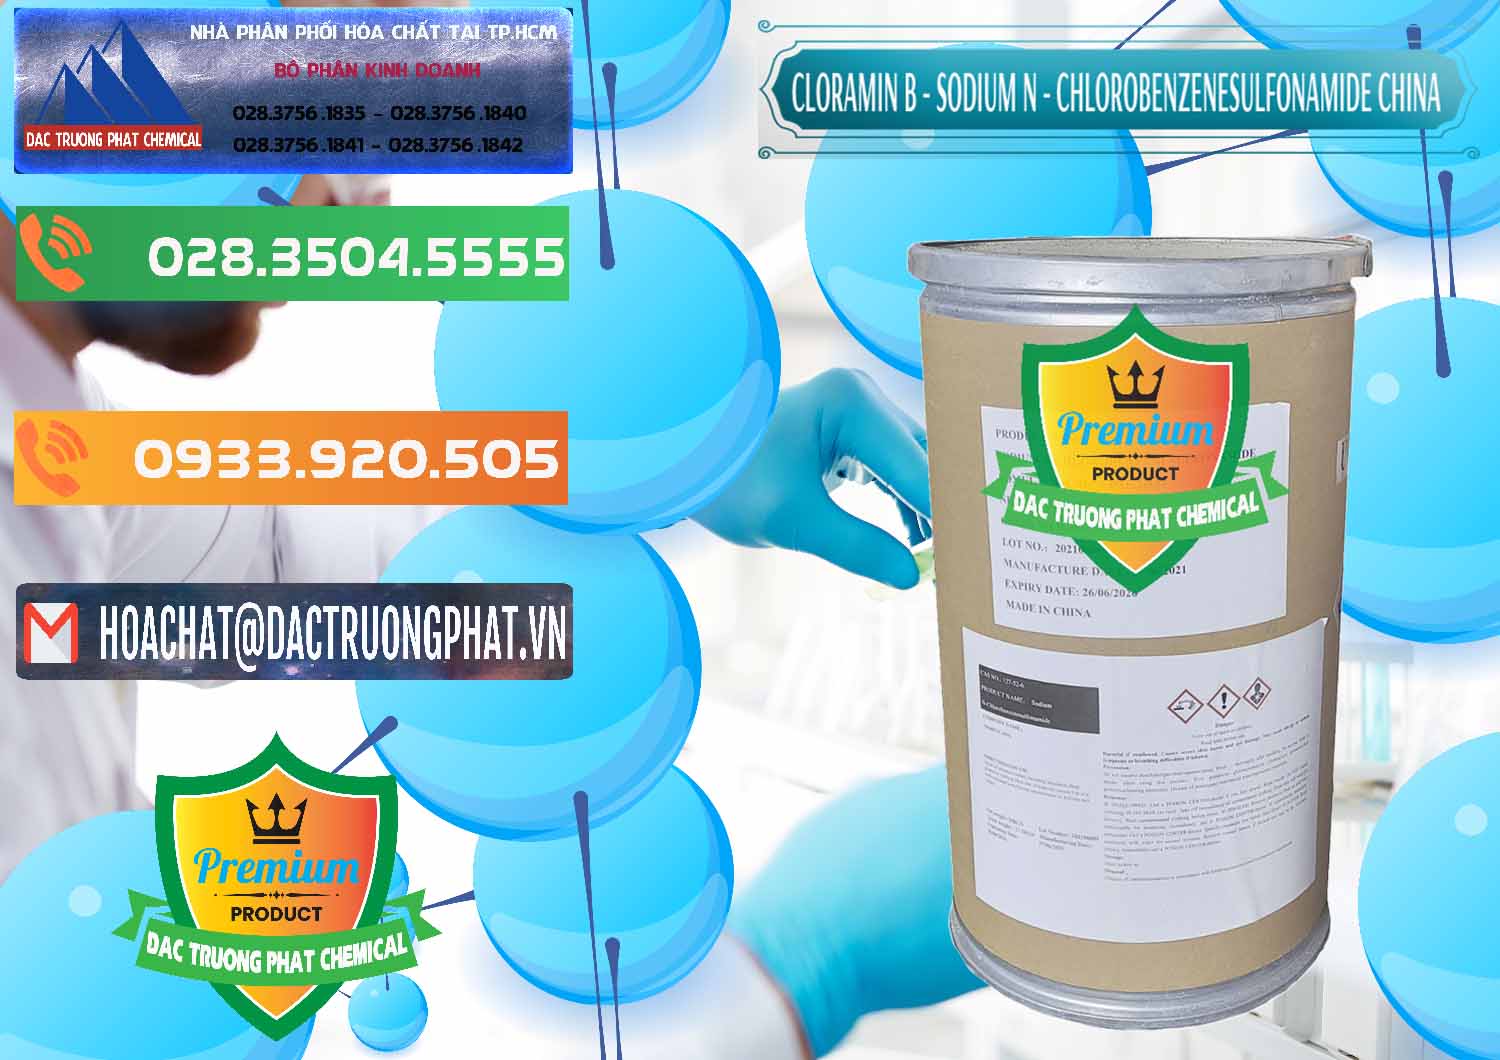 Nơi chuyên bán - cung cấp Cloramin B Khử Trùng, Diệt Khuẩn Trung Quốc China - 0298 - Cung cấp và bán hóa chất tại TP.HCM - hoachatxulynuoc.com.vn